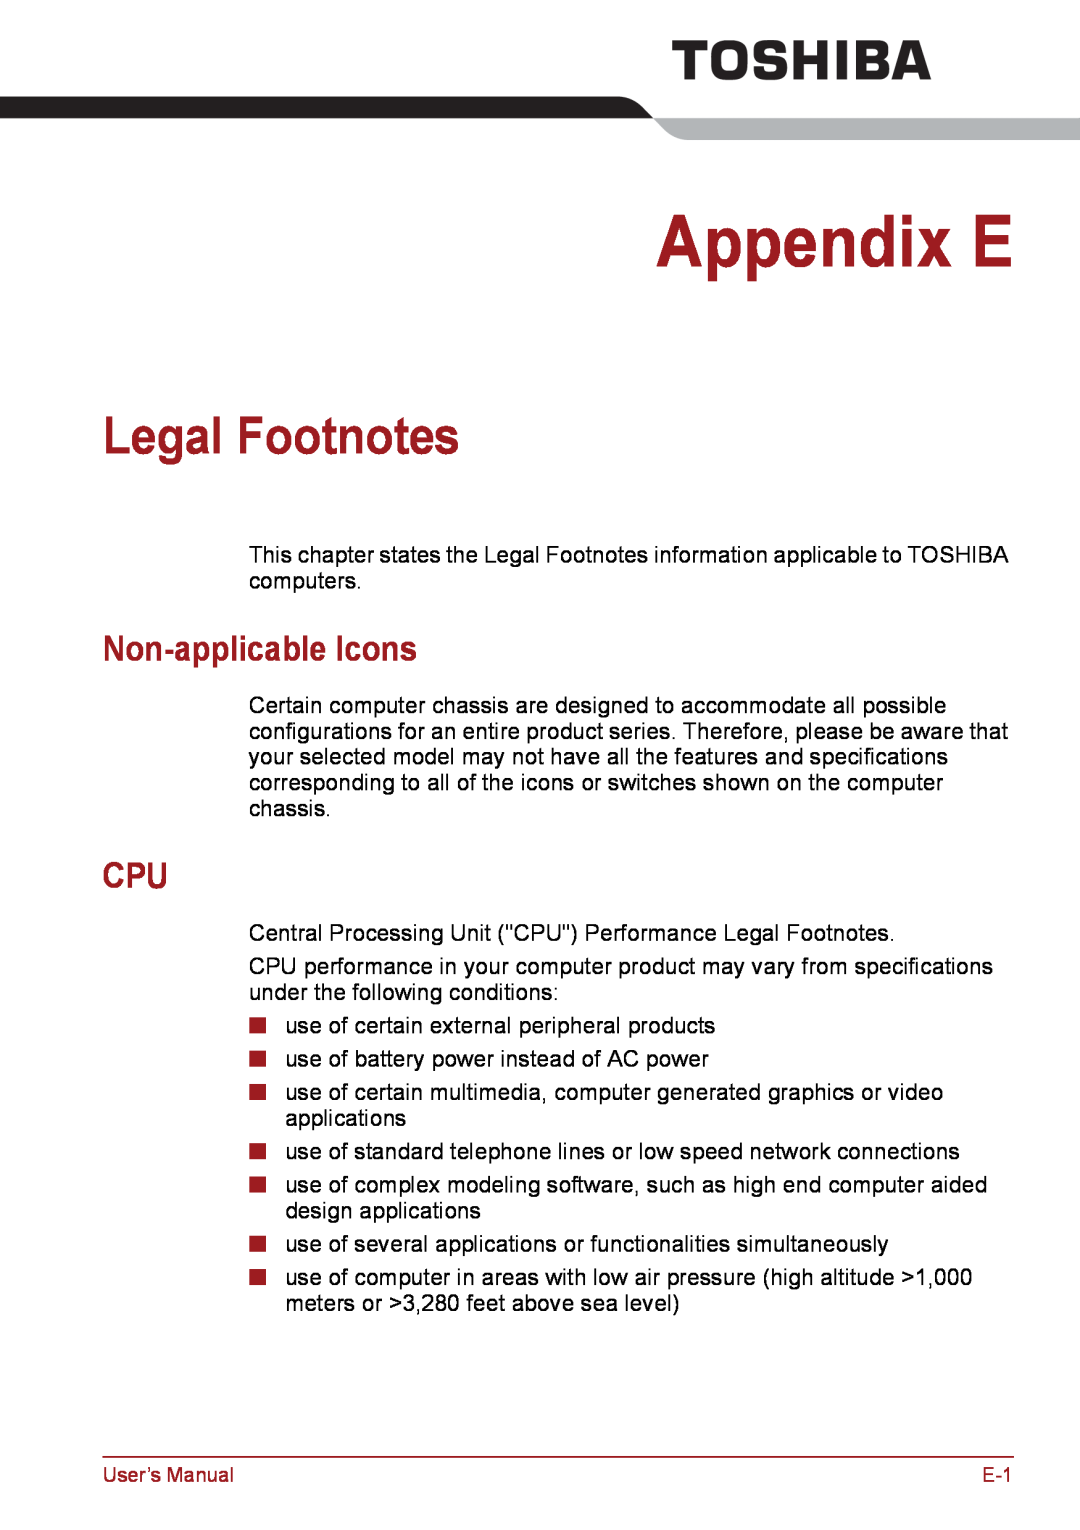 Toshiba PSC08U-02D01D user manual Appendix E, Legal Footnotes, Non-applicable Icons 